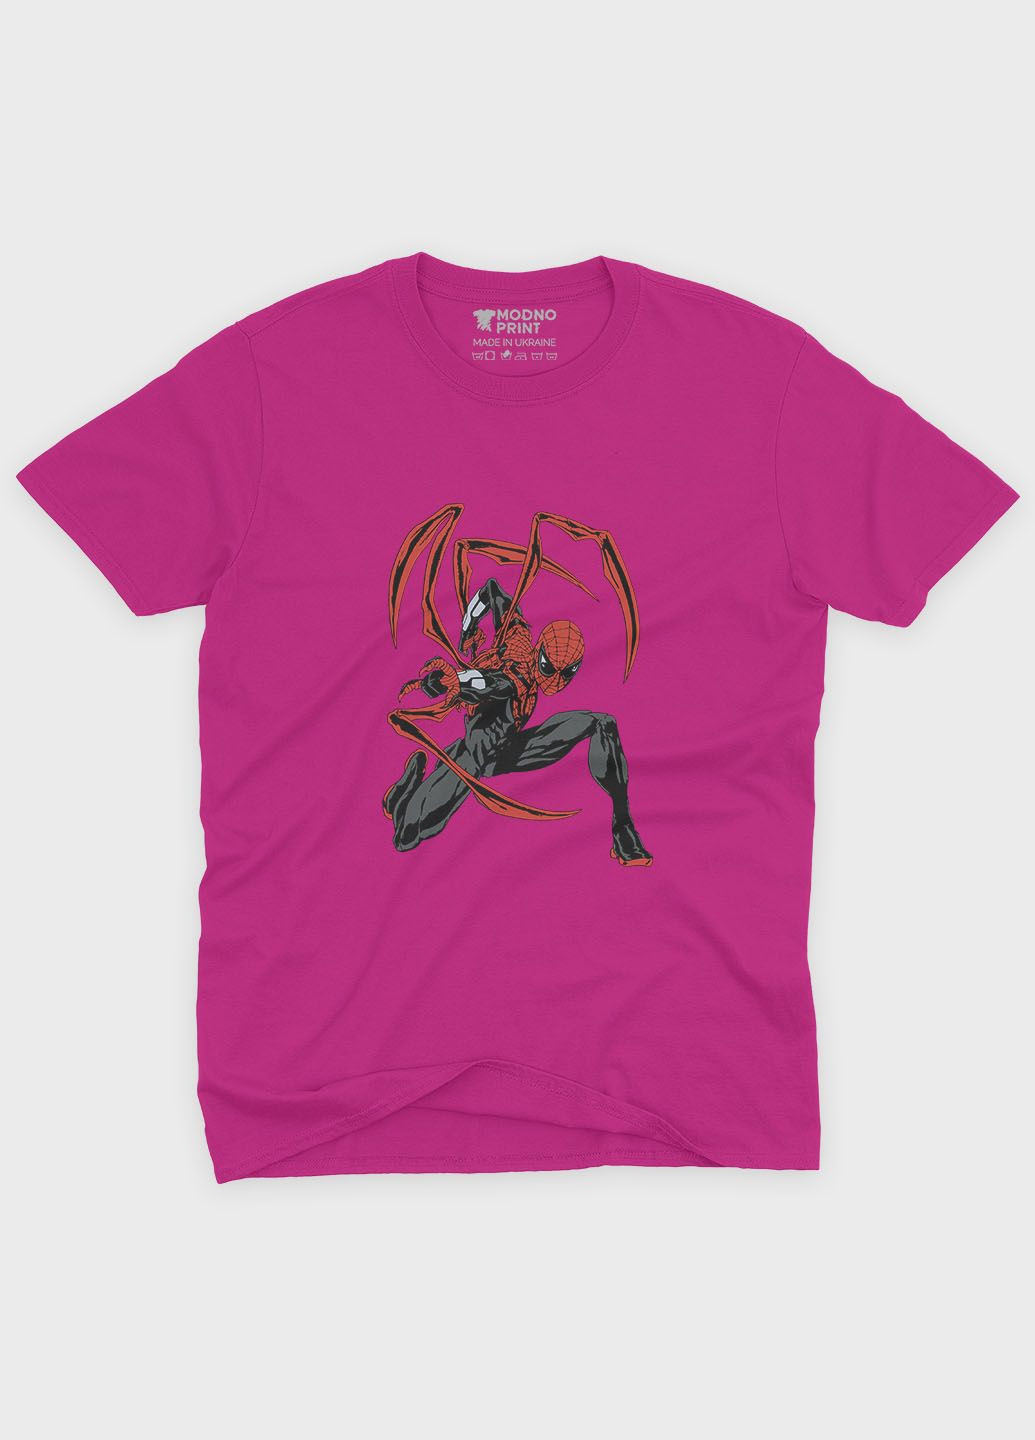 Рожева демісезонна футболка для дівчинки з принтом супергероя - людина-павук (ts001-1-fuxj-006-014-115-g) Modno